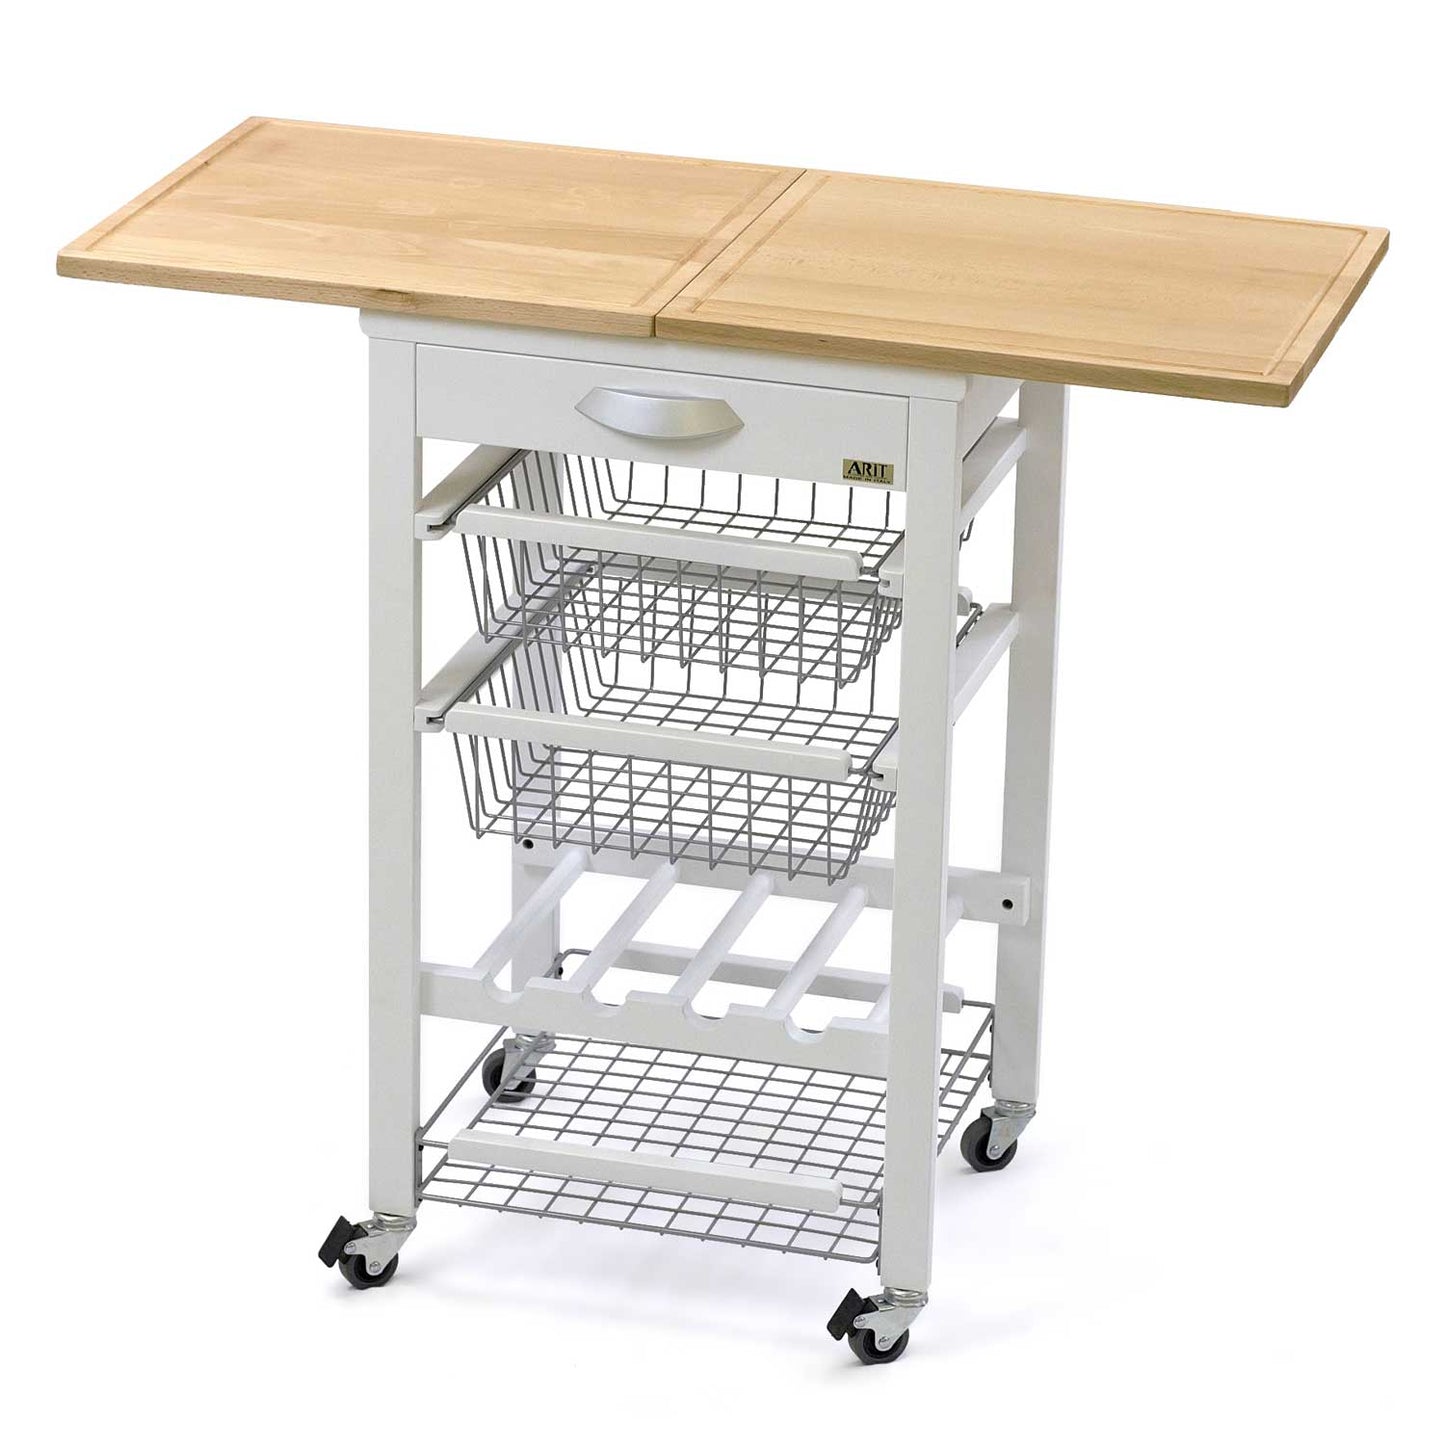 ARIT - Küchenwagen mit arbeitsplatte GASTONE, Arbeitsfläche (50 bis 100 cm), Küchenrollwagen, Küchenwagen holz, Weiß, 2